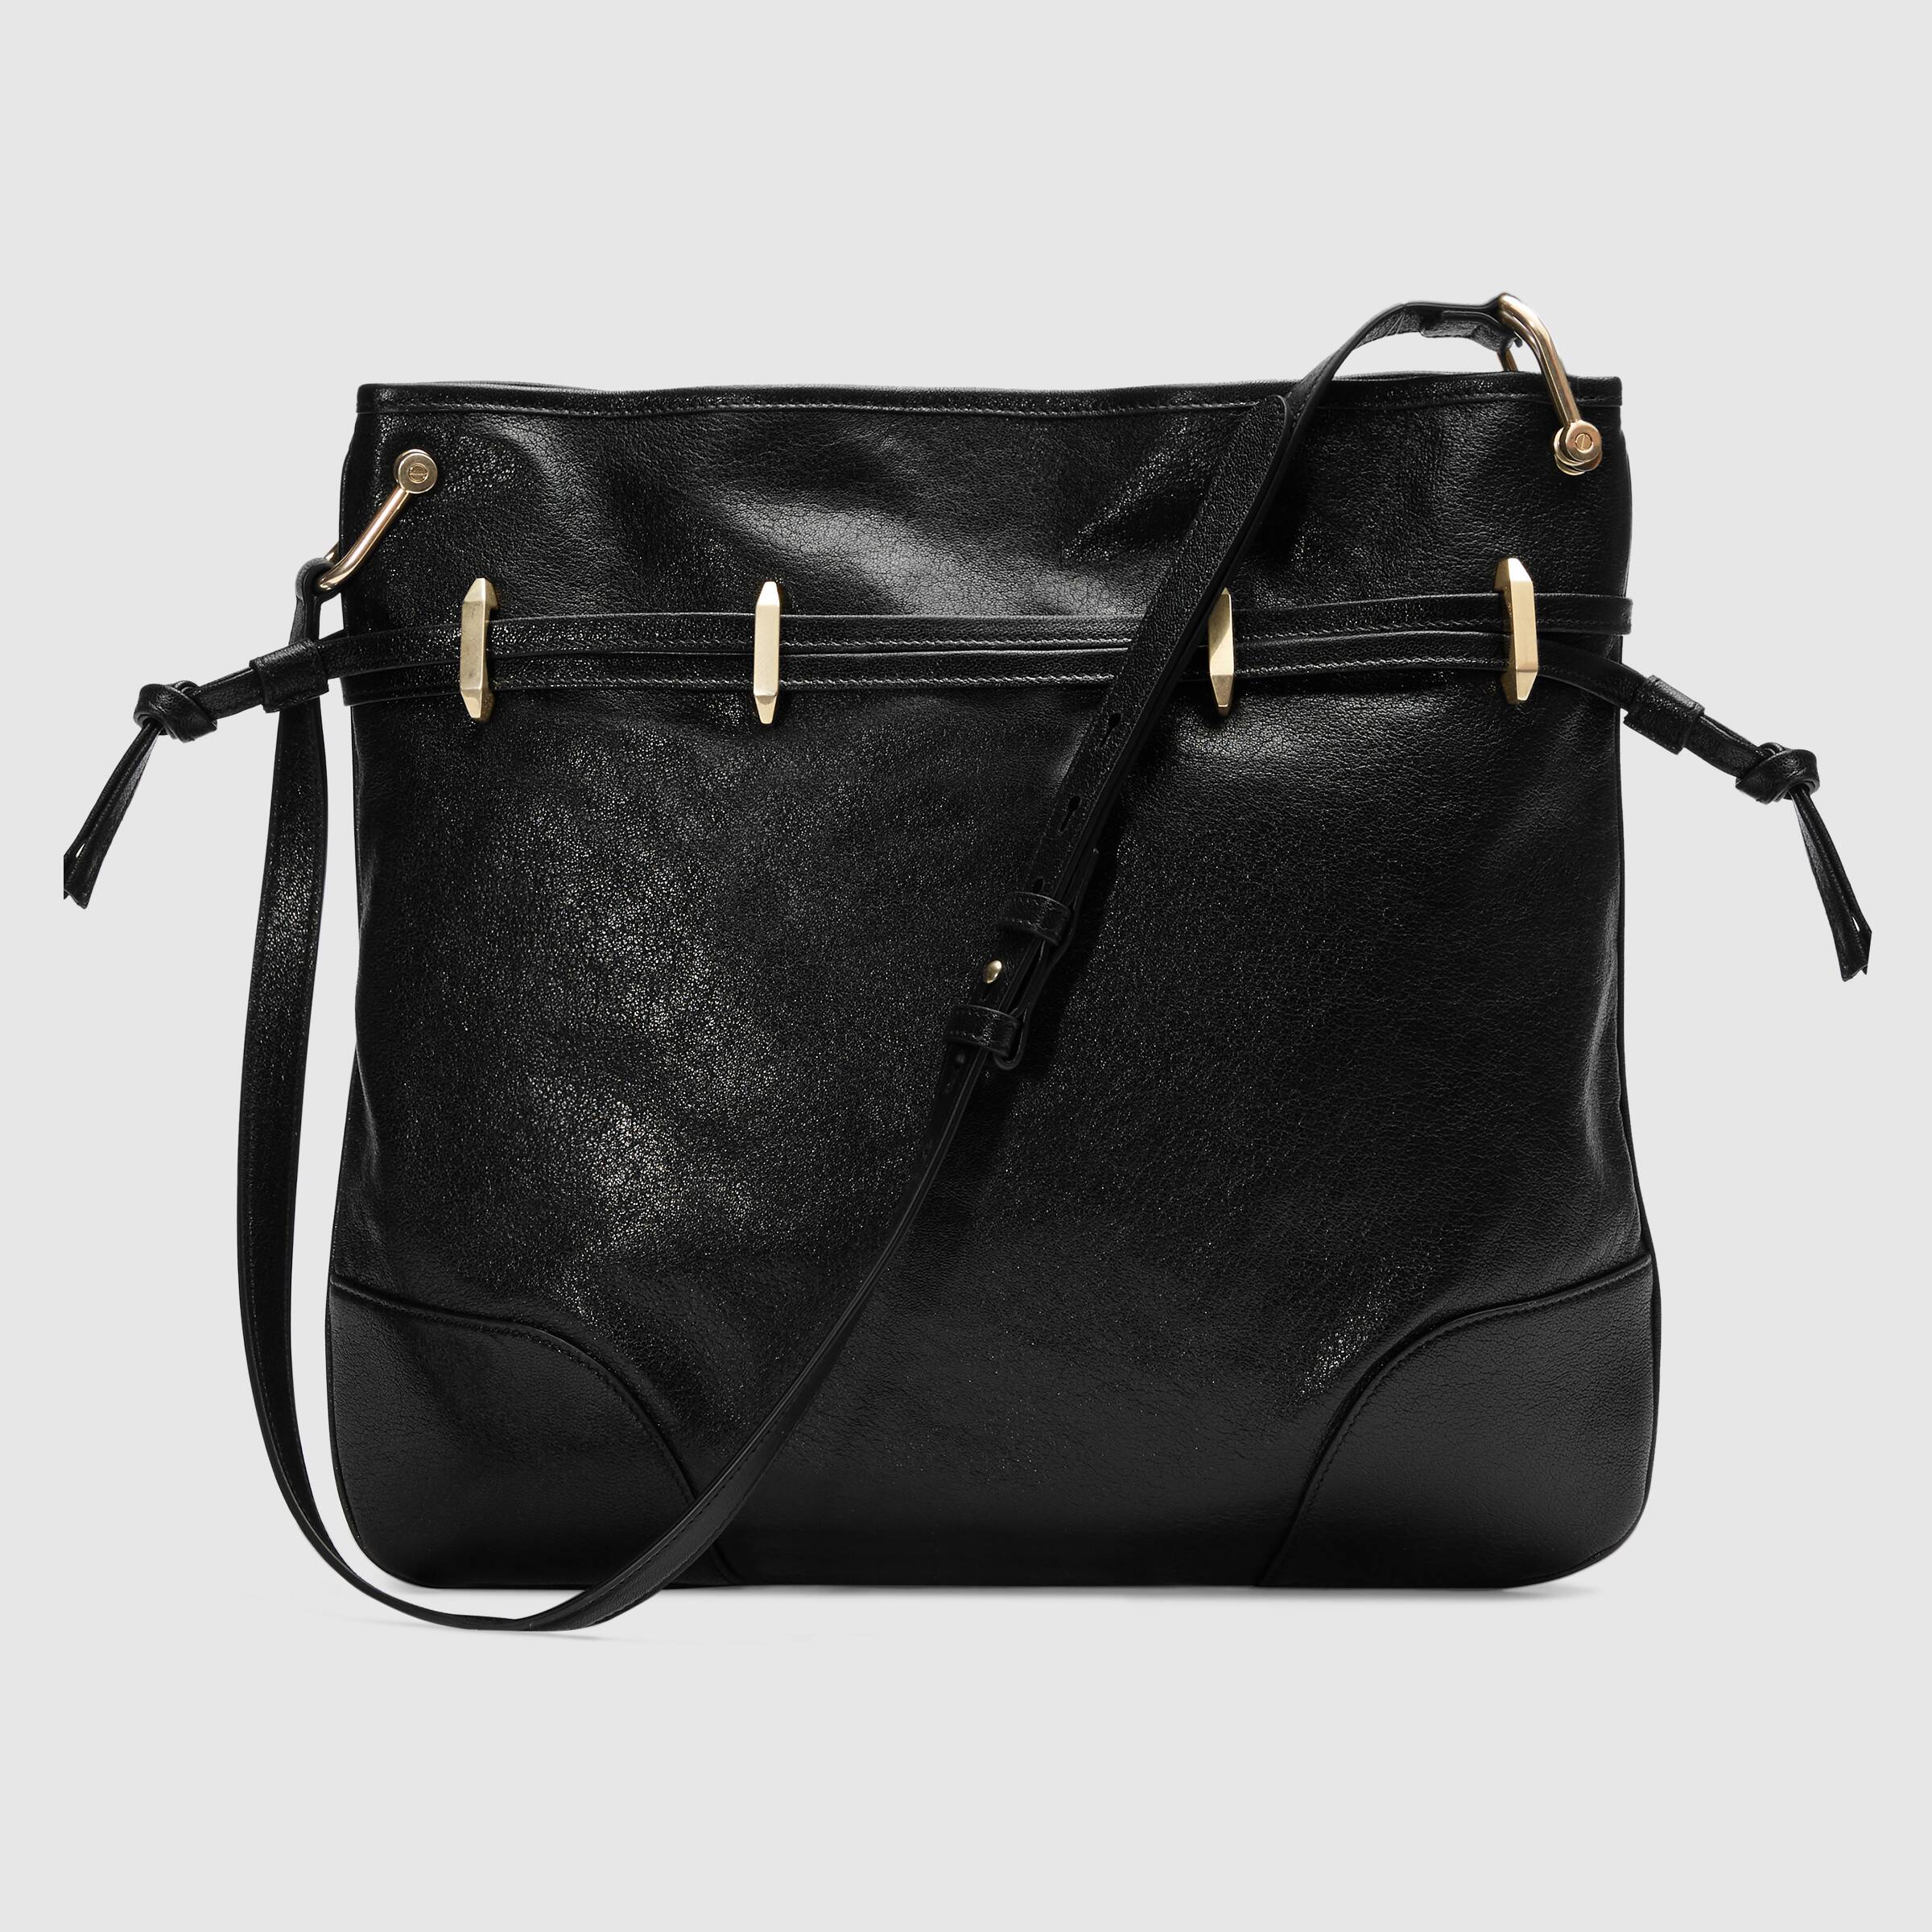 Gucci 1955 Horsebit Messenger Bag Black